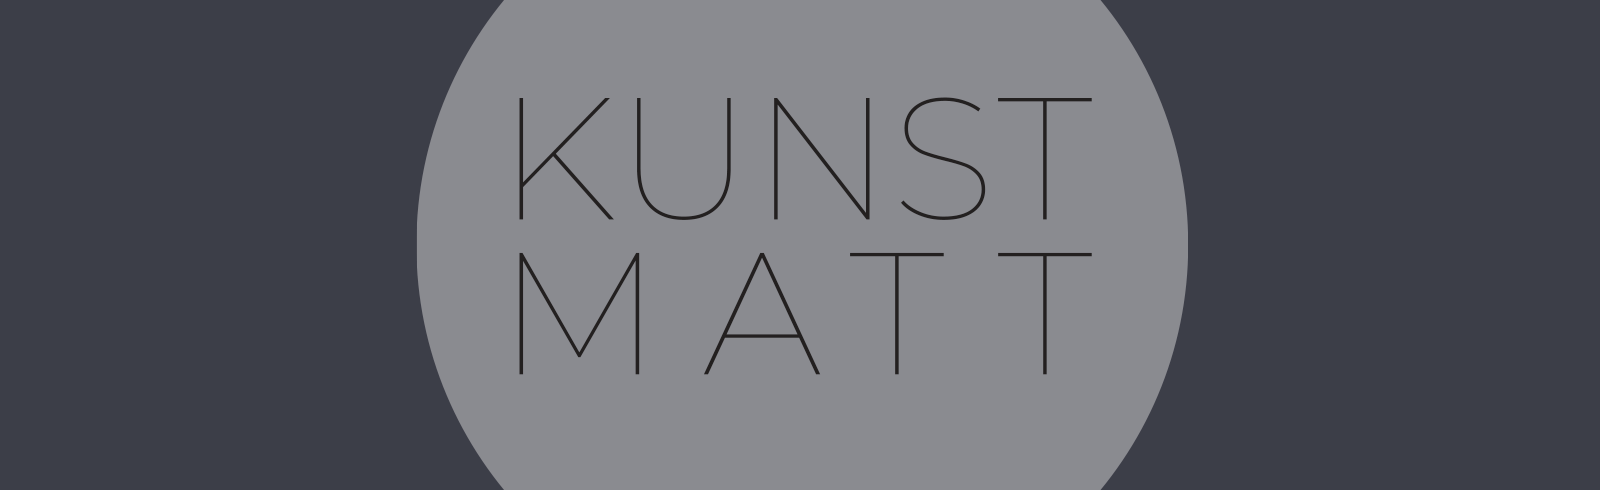 KunstMatt